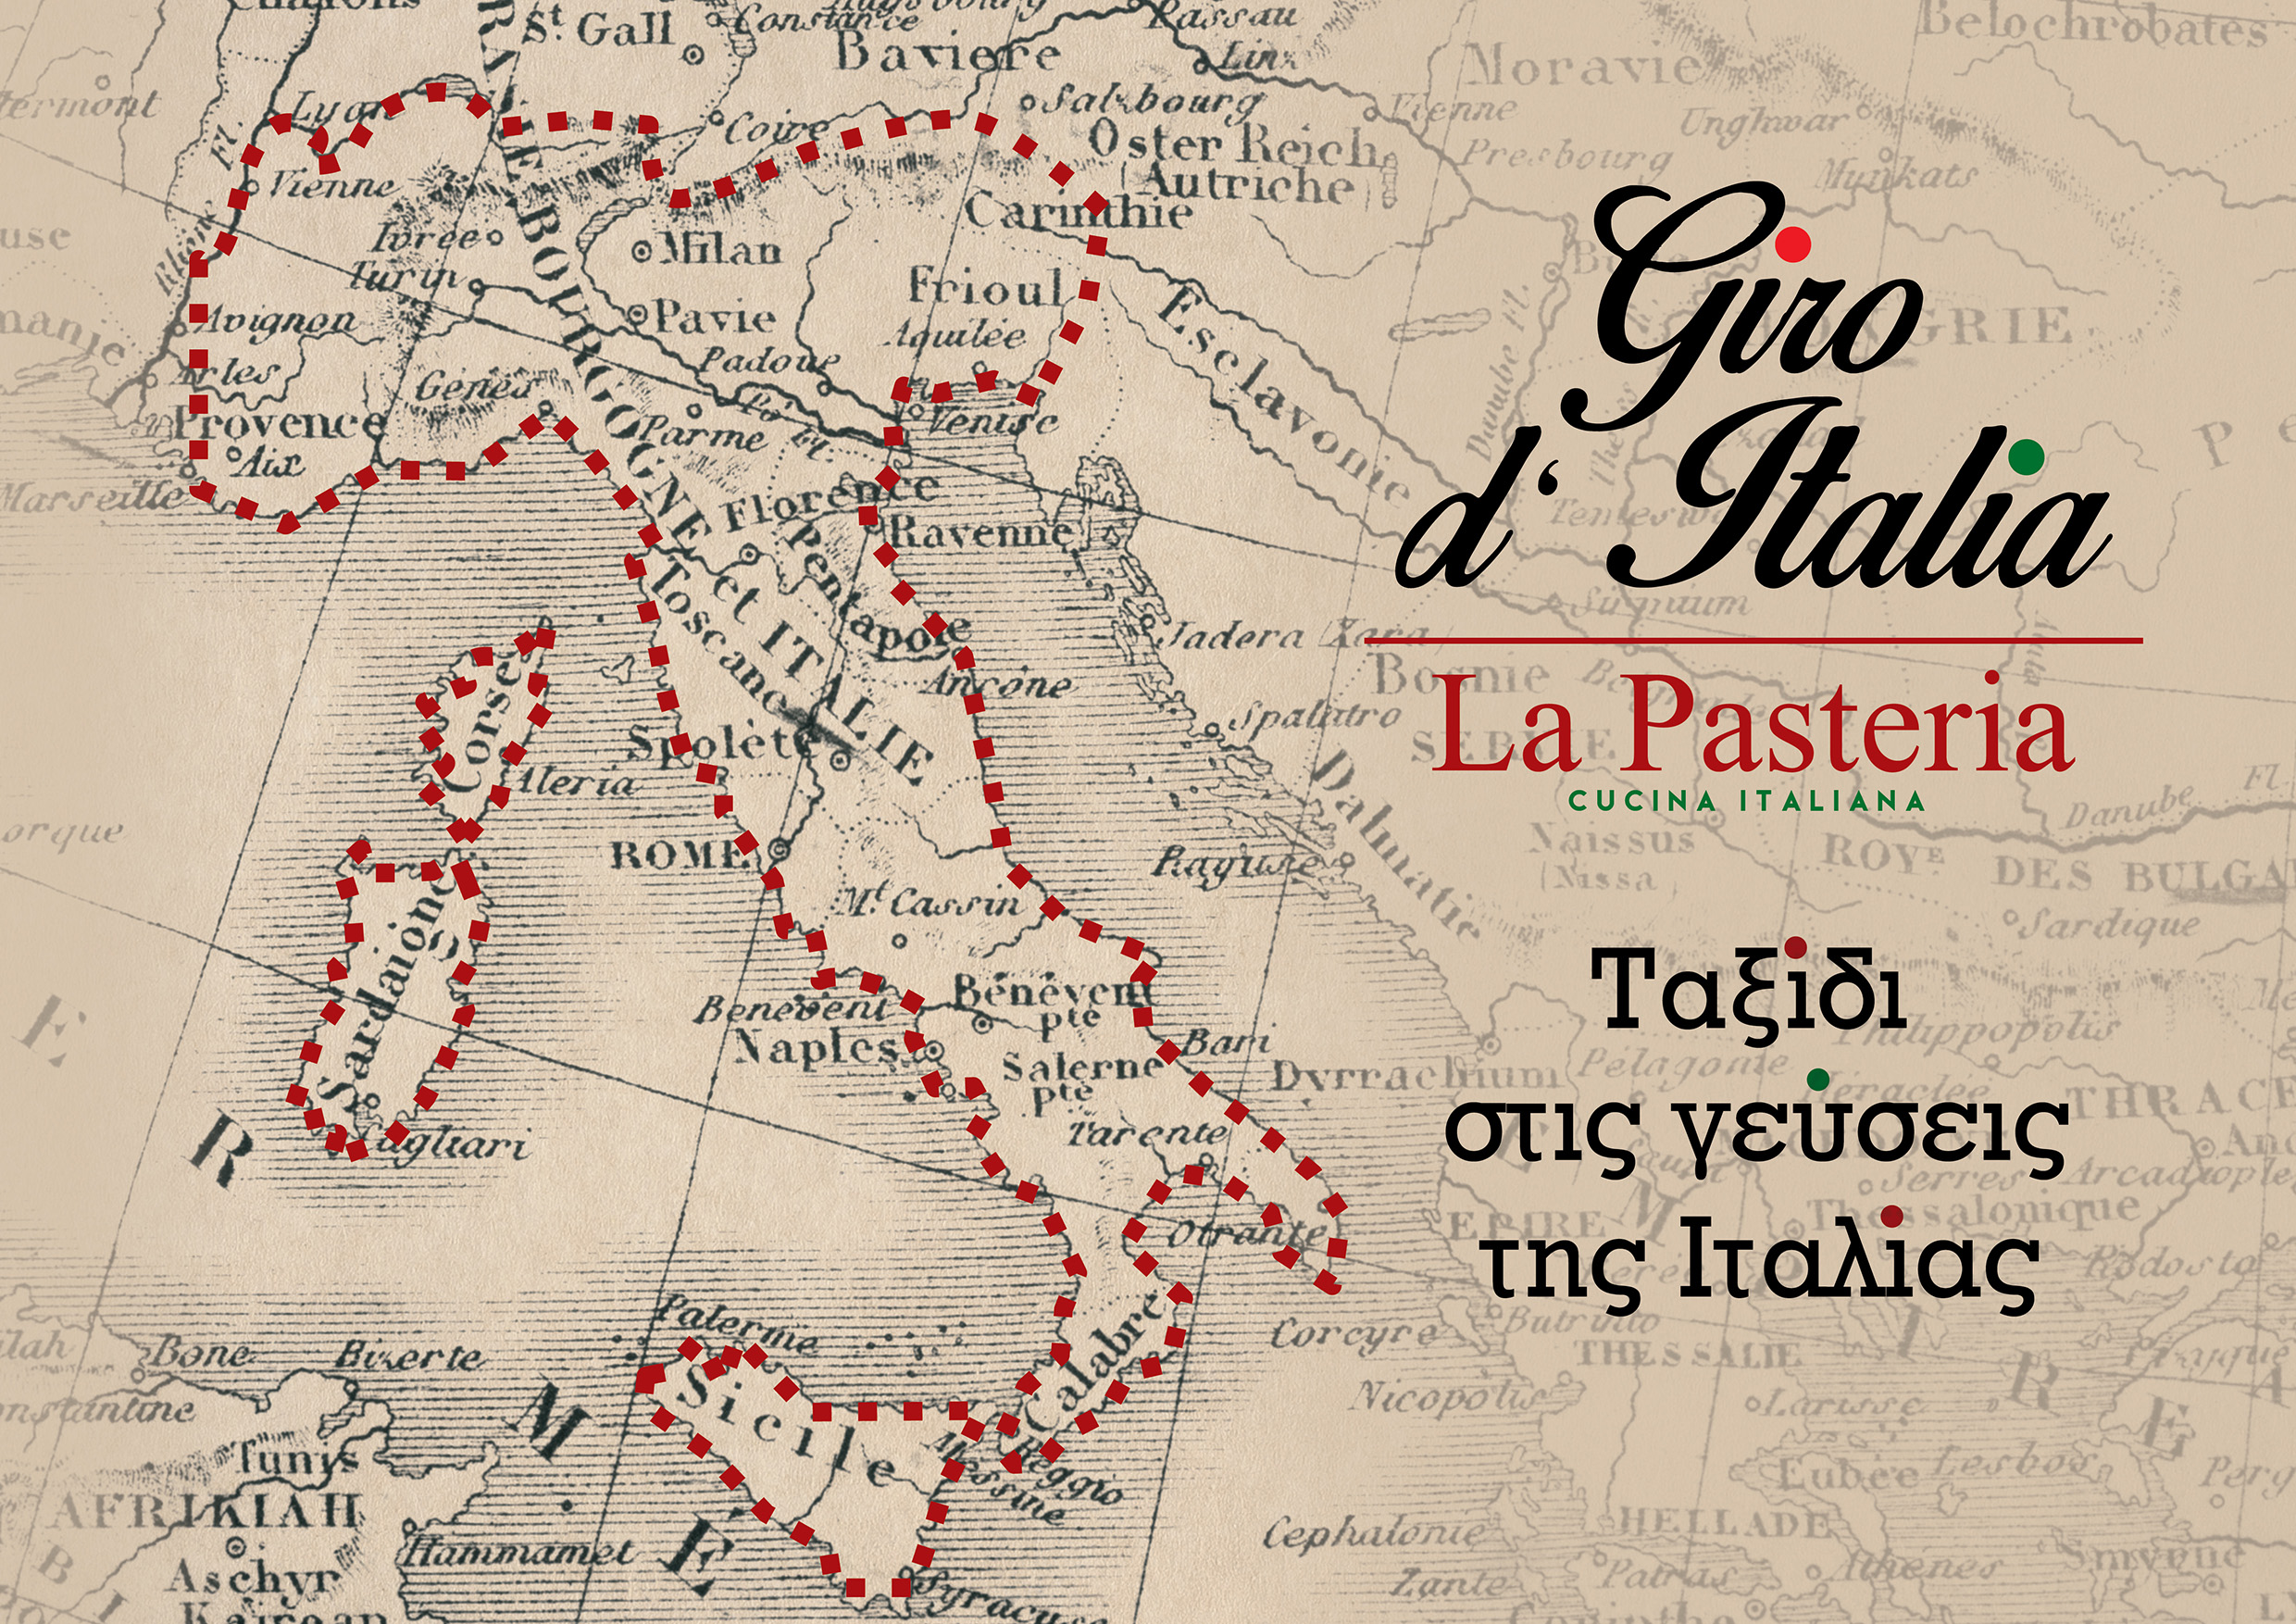 “Giro d’Italia” de La Pasteria: Un viaggio tra i profumi e i sapori dell’Italia